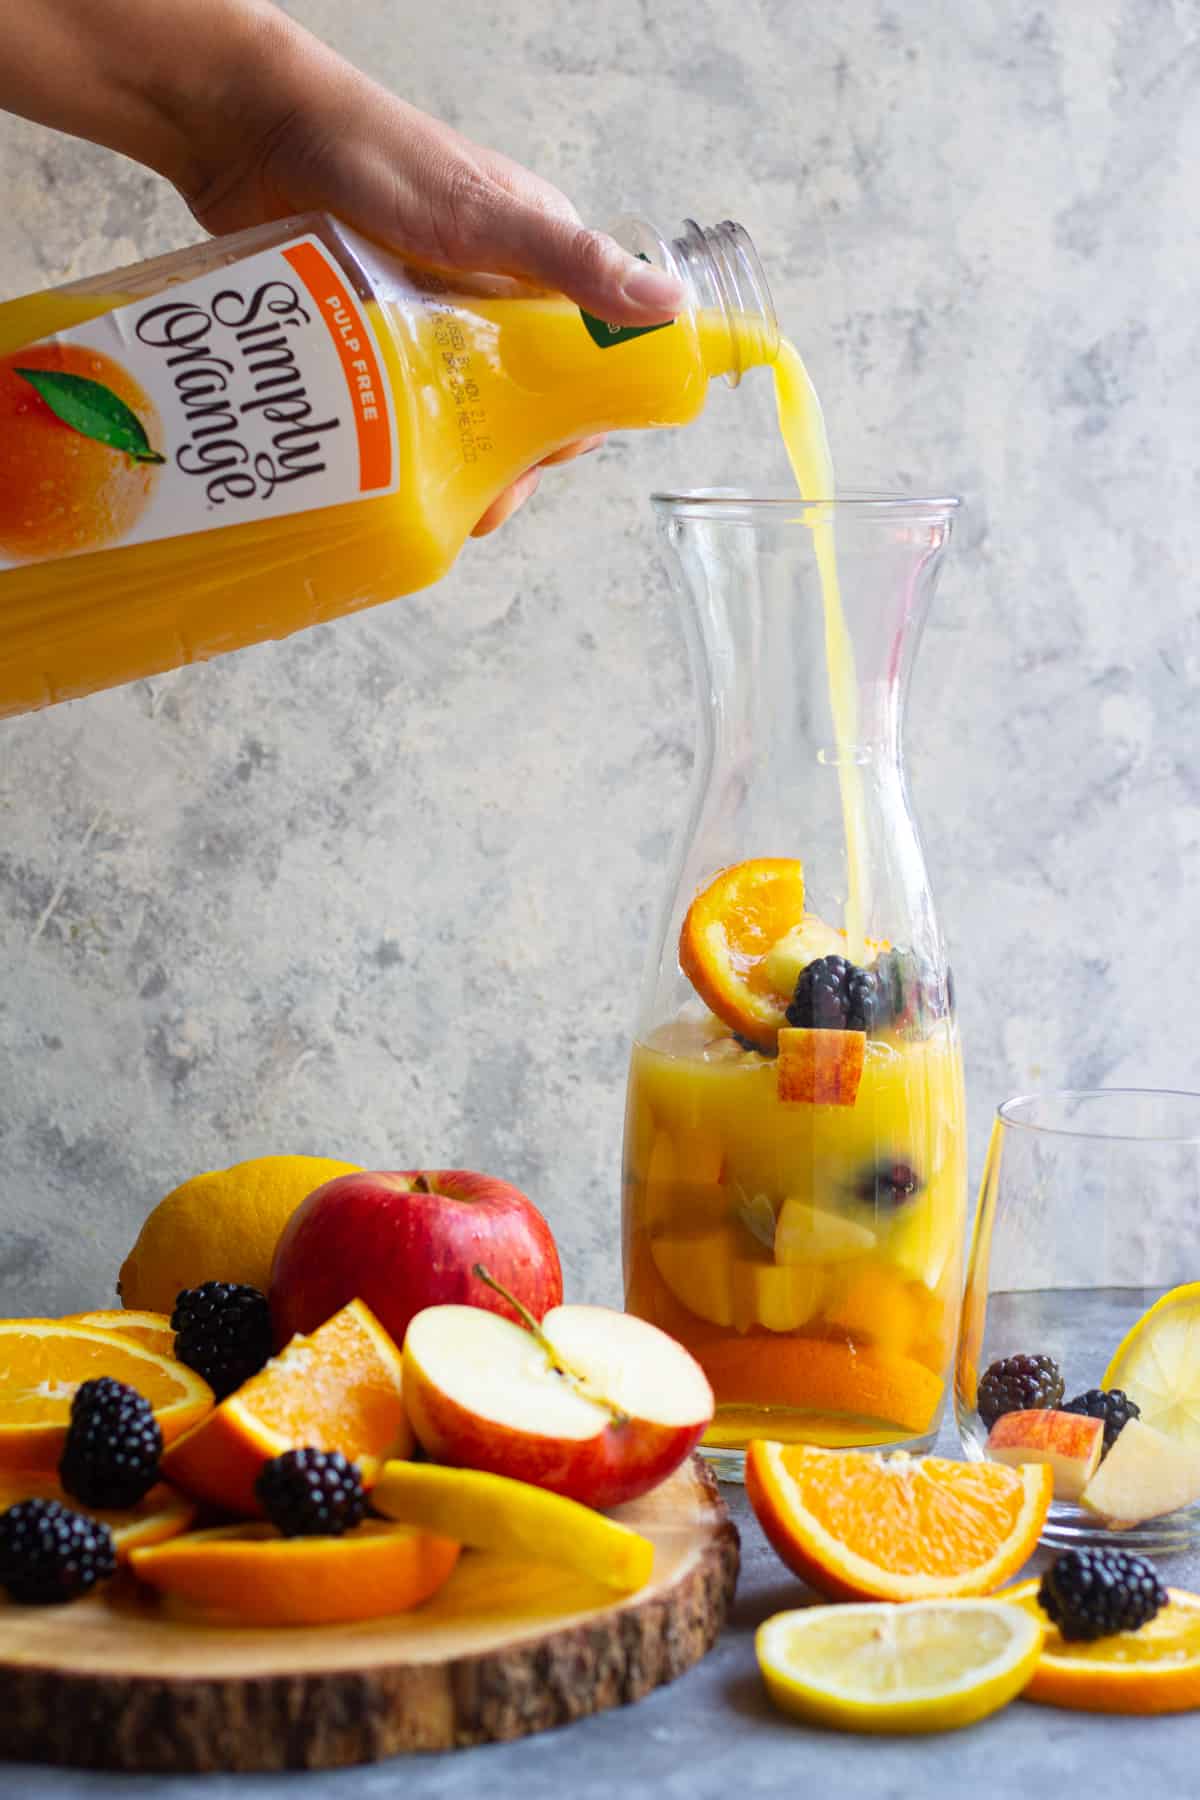 A pour shot of the orange juice. 